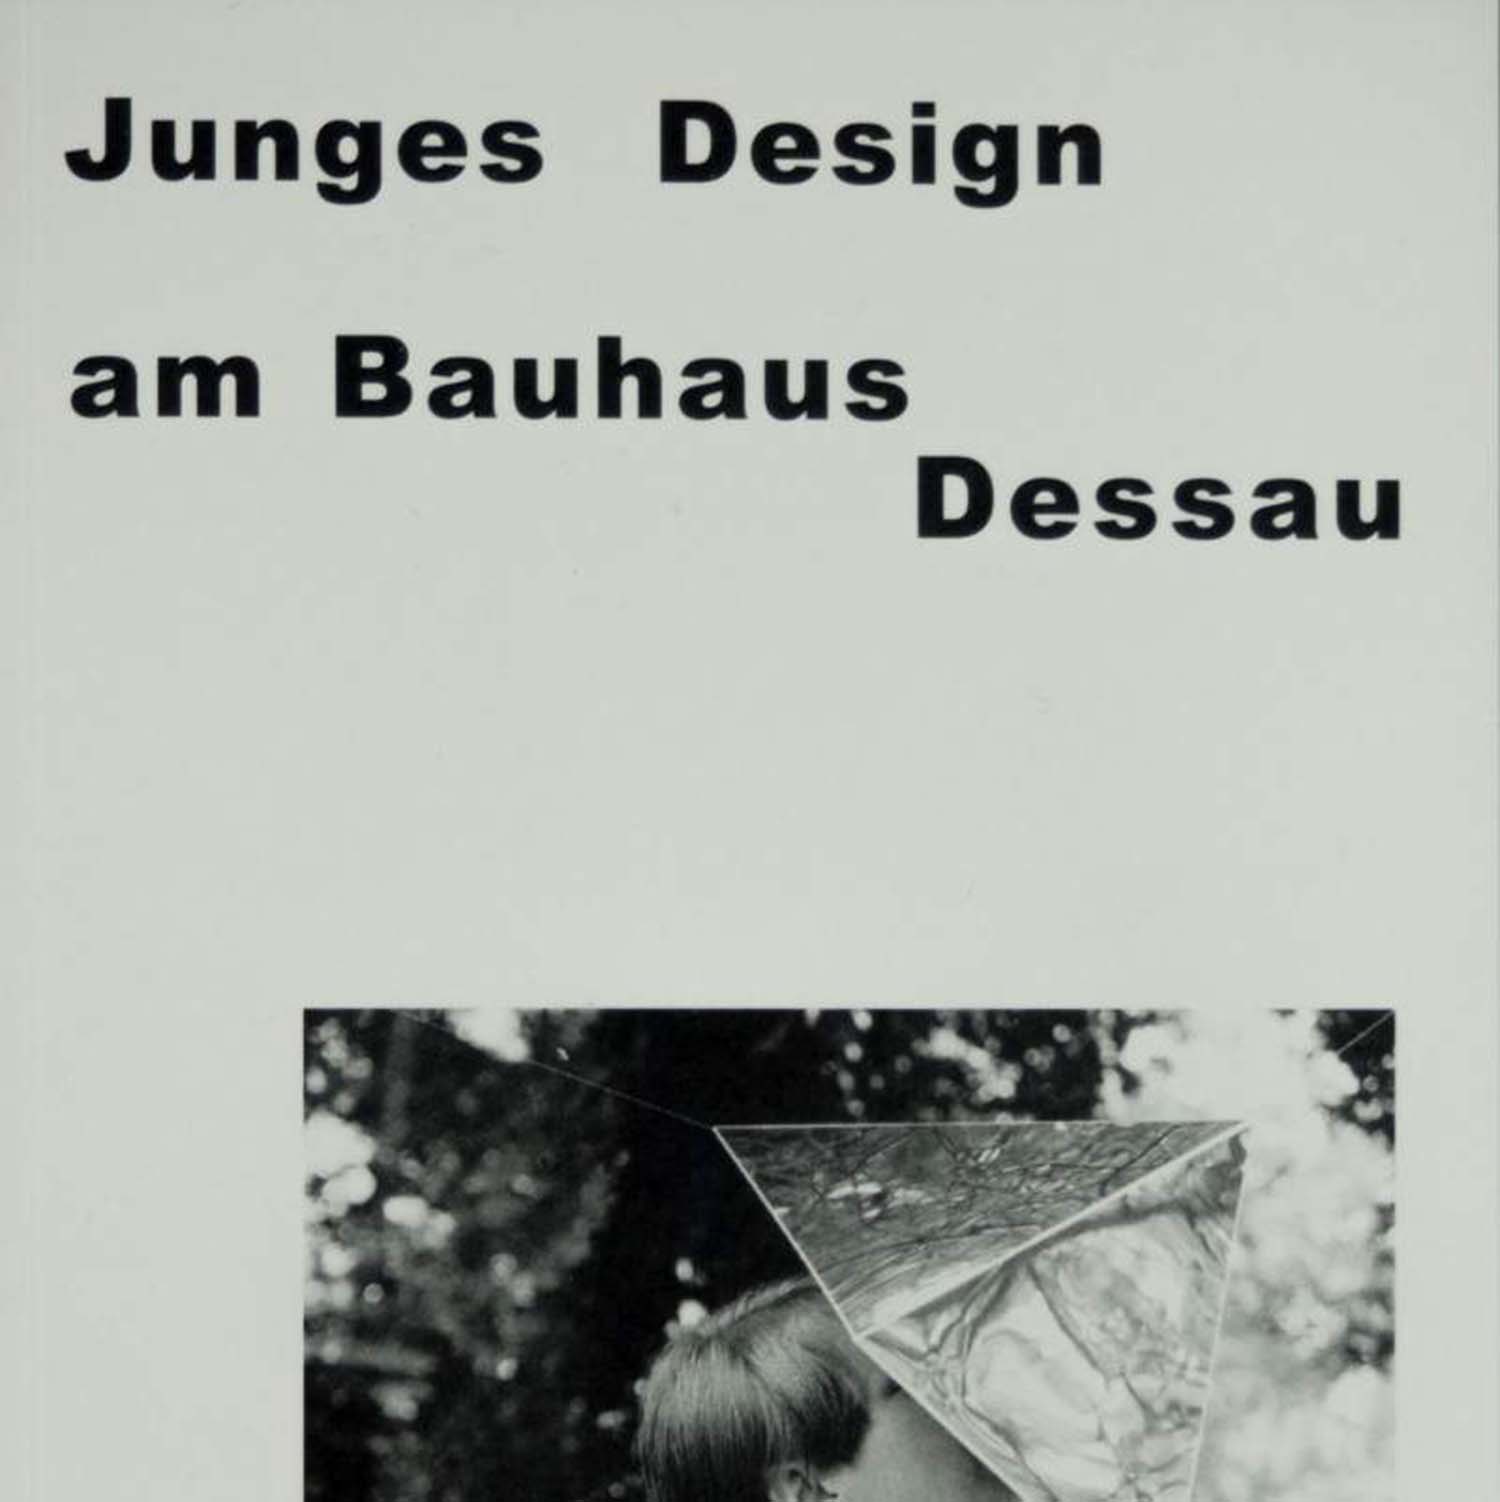 德绍包豪斯的年轻设计的图片
